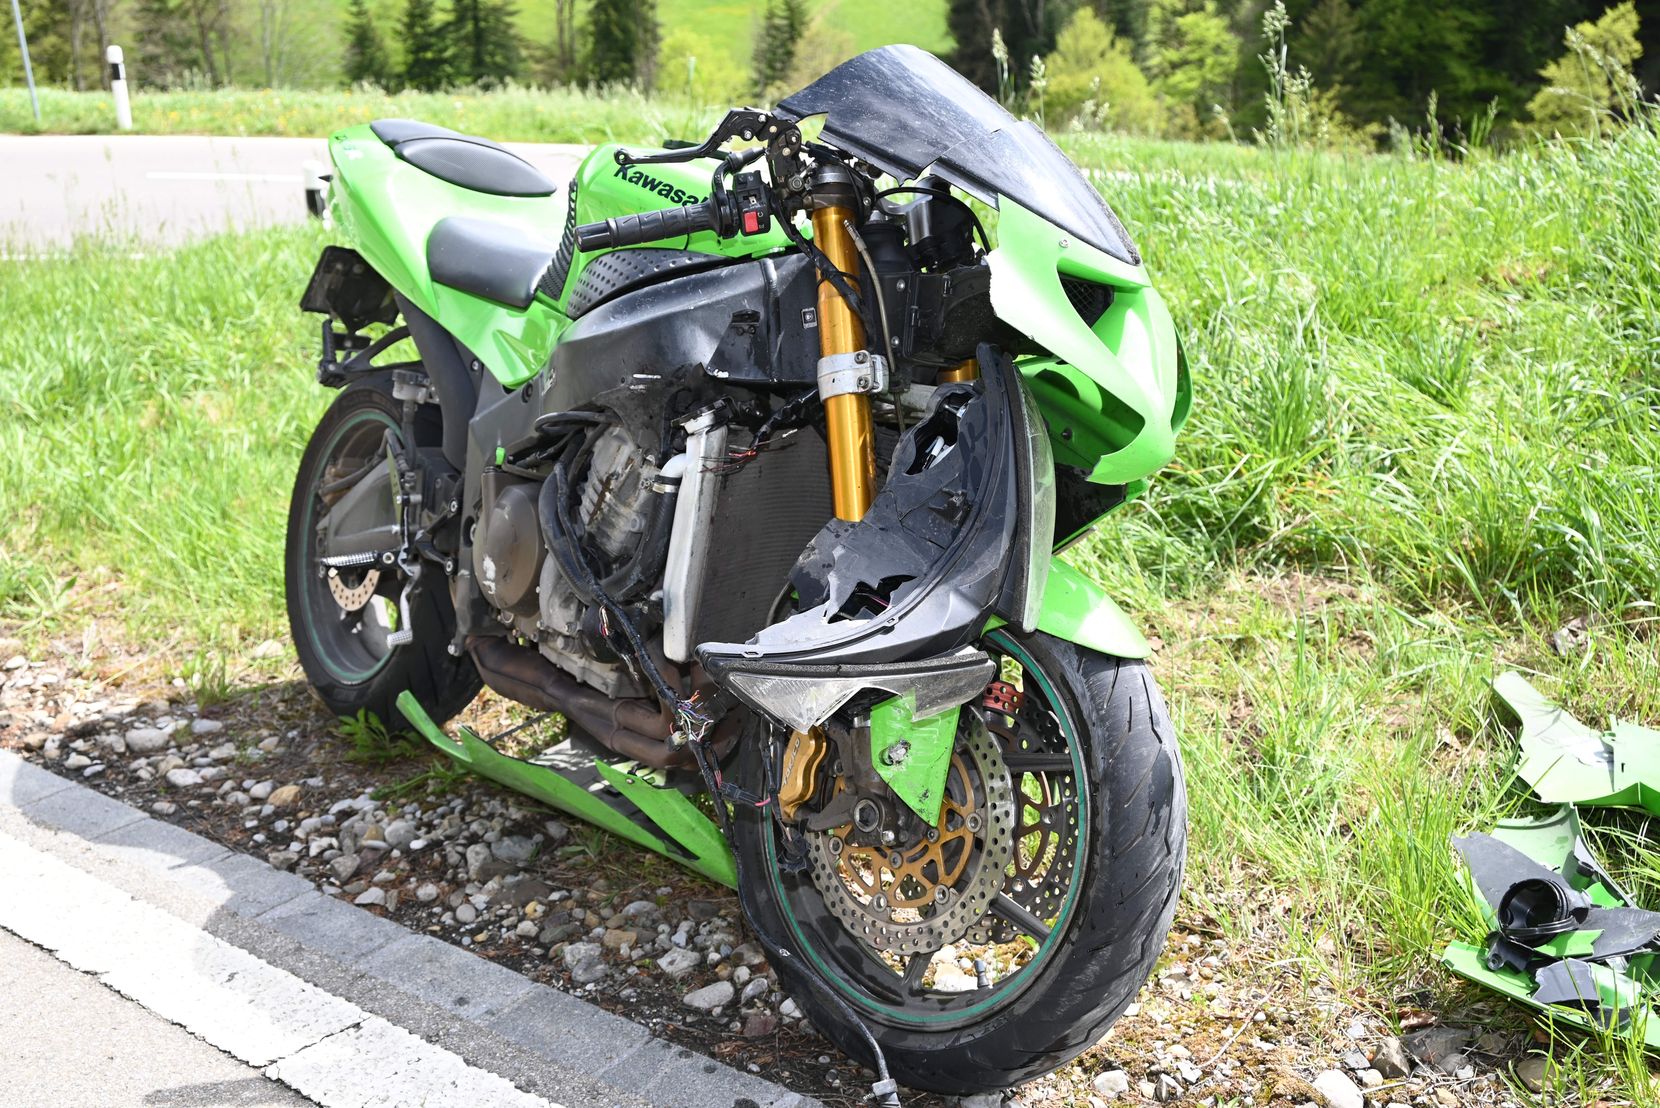 Man sieht ein grünes Motorrad, das nach einem Sturz beschädigt ist.